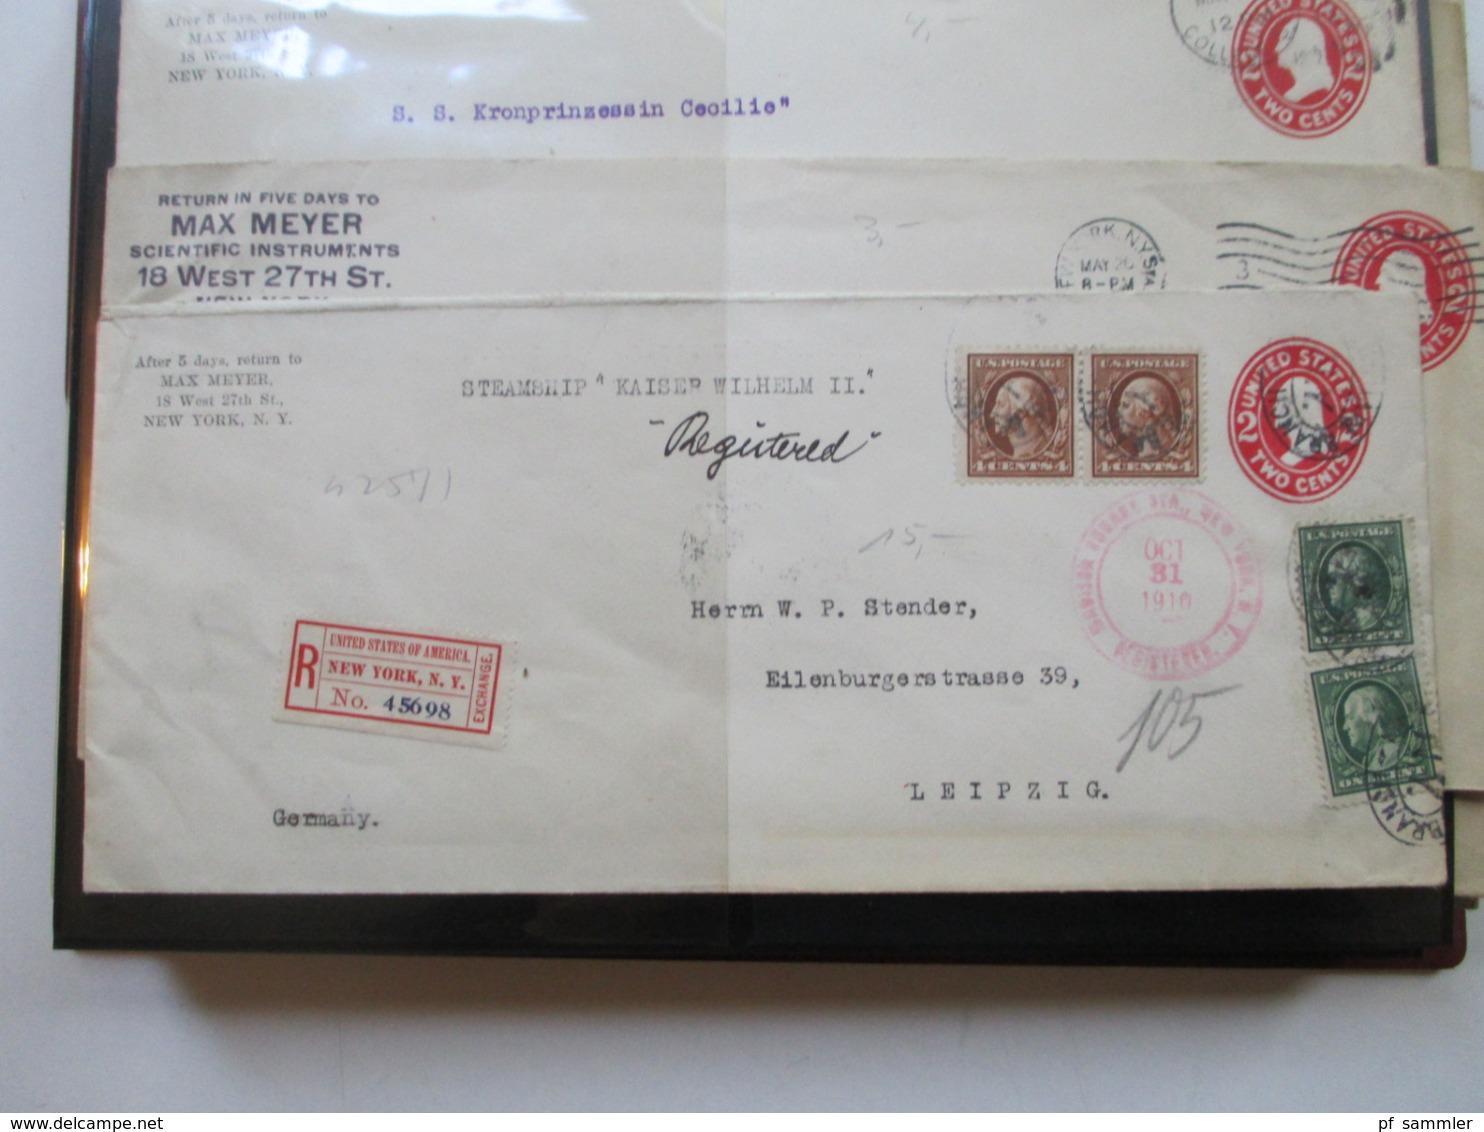 USA Belege / Ganzsachen Sammlung ab 1878 - 1920er Jahre Firmenkorrespondenz nach Leipzig! Interessante Belege! 90 Stk